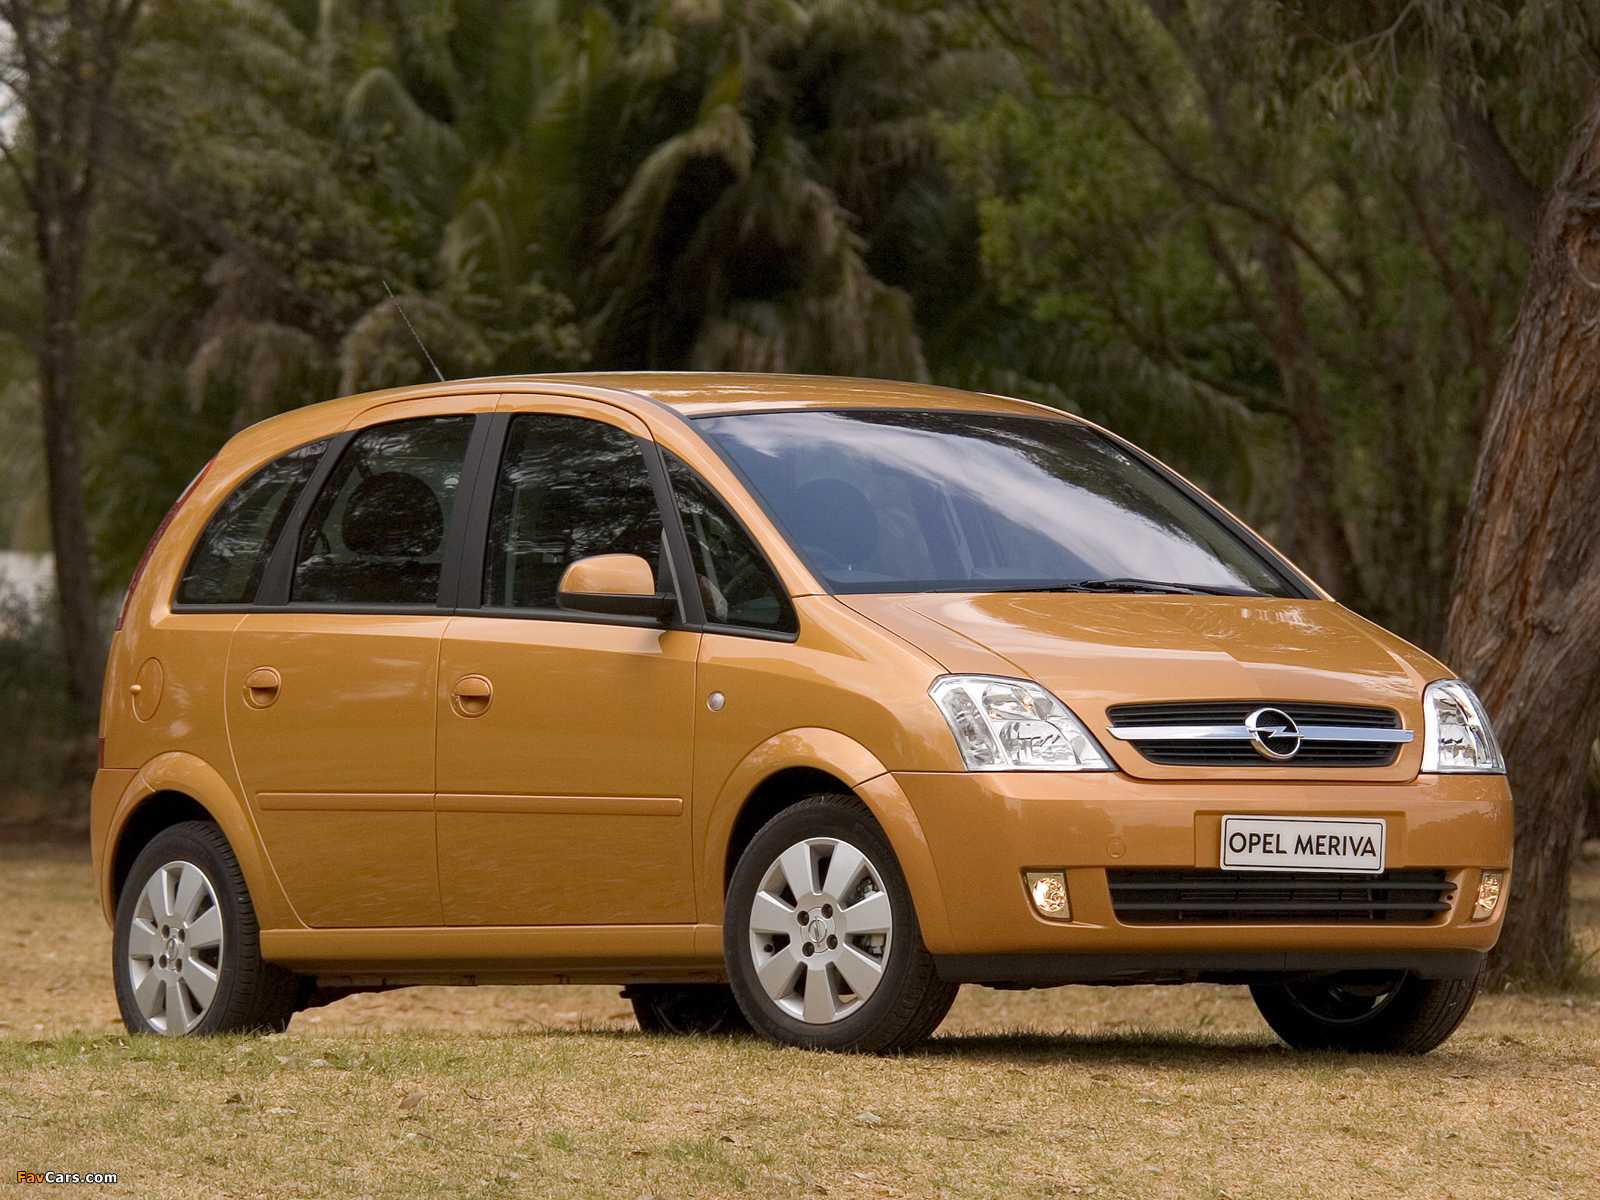 Opel meriva фото видео обзор интерьер экстерьер